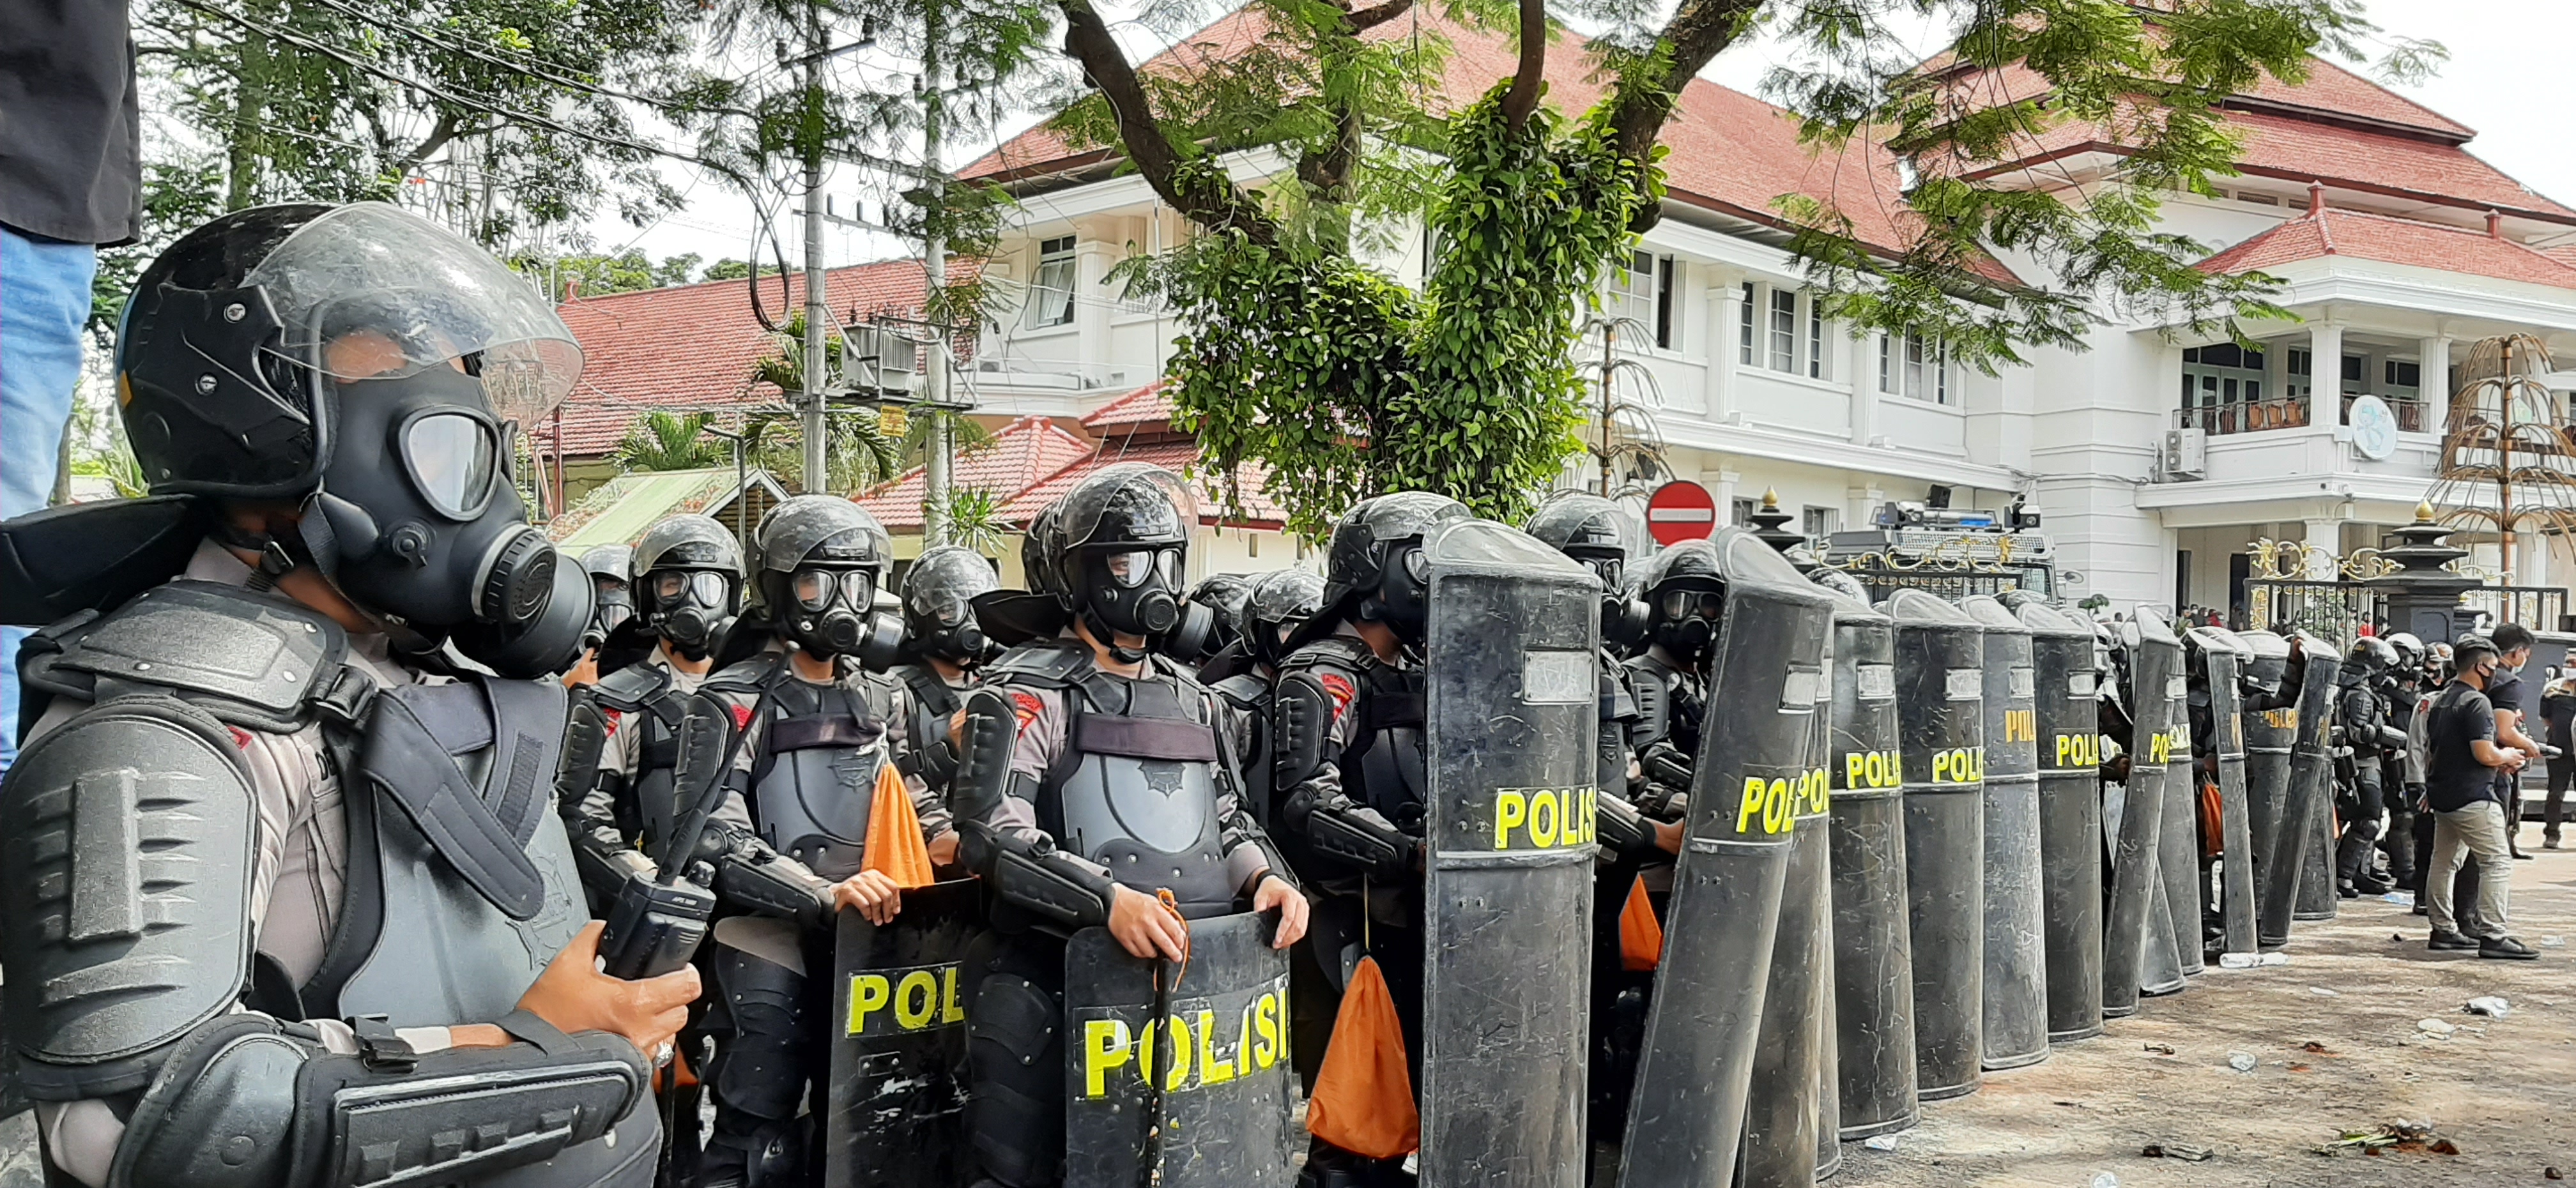 Wali Kota Malang Kecam Tindakan Anarki saat Demo Tolak UU Cipta Kerja